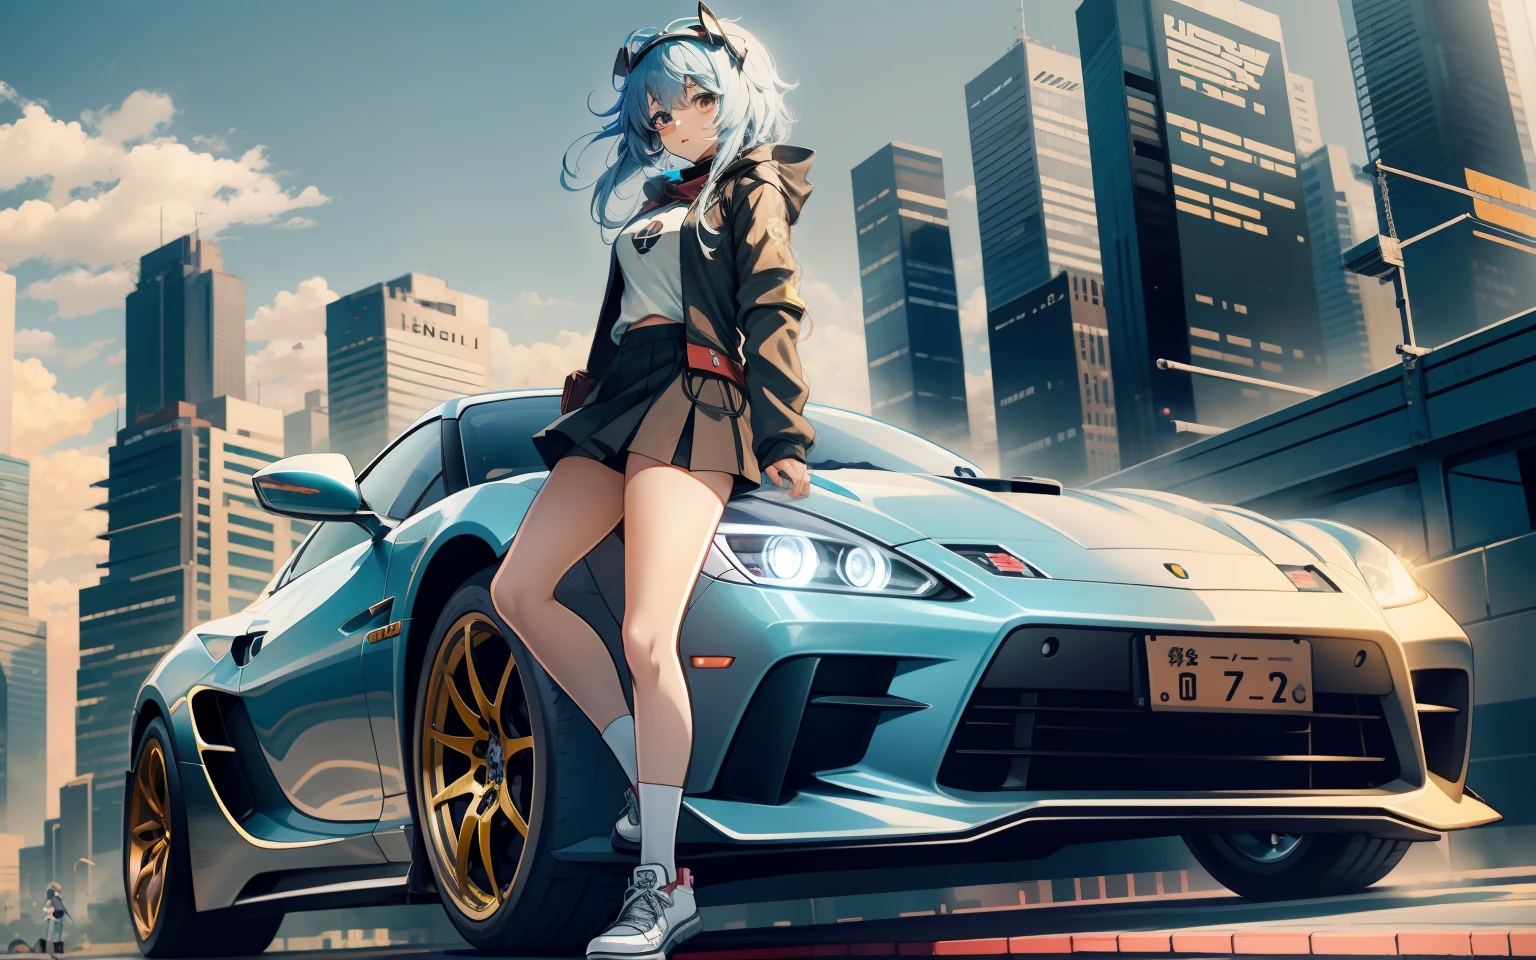  Anime-Serie, Super Auto hinter einem Mädchen